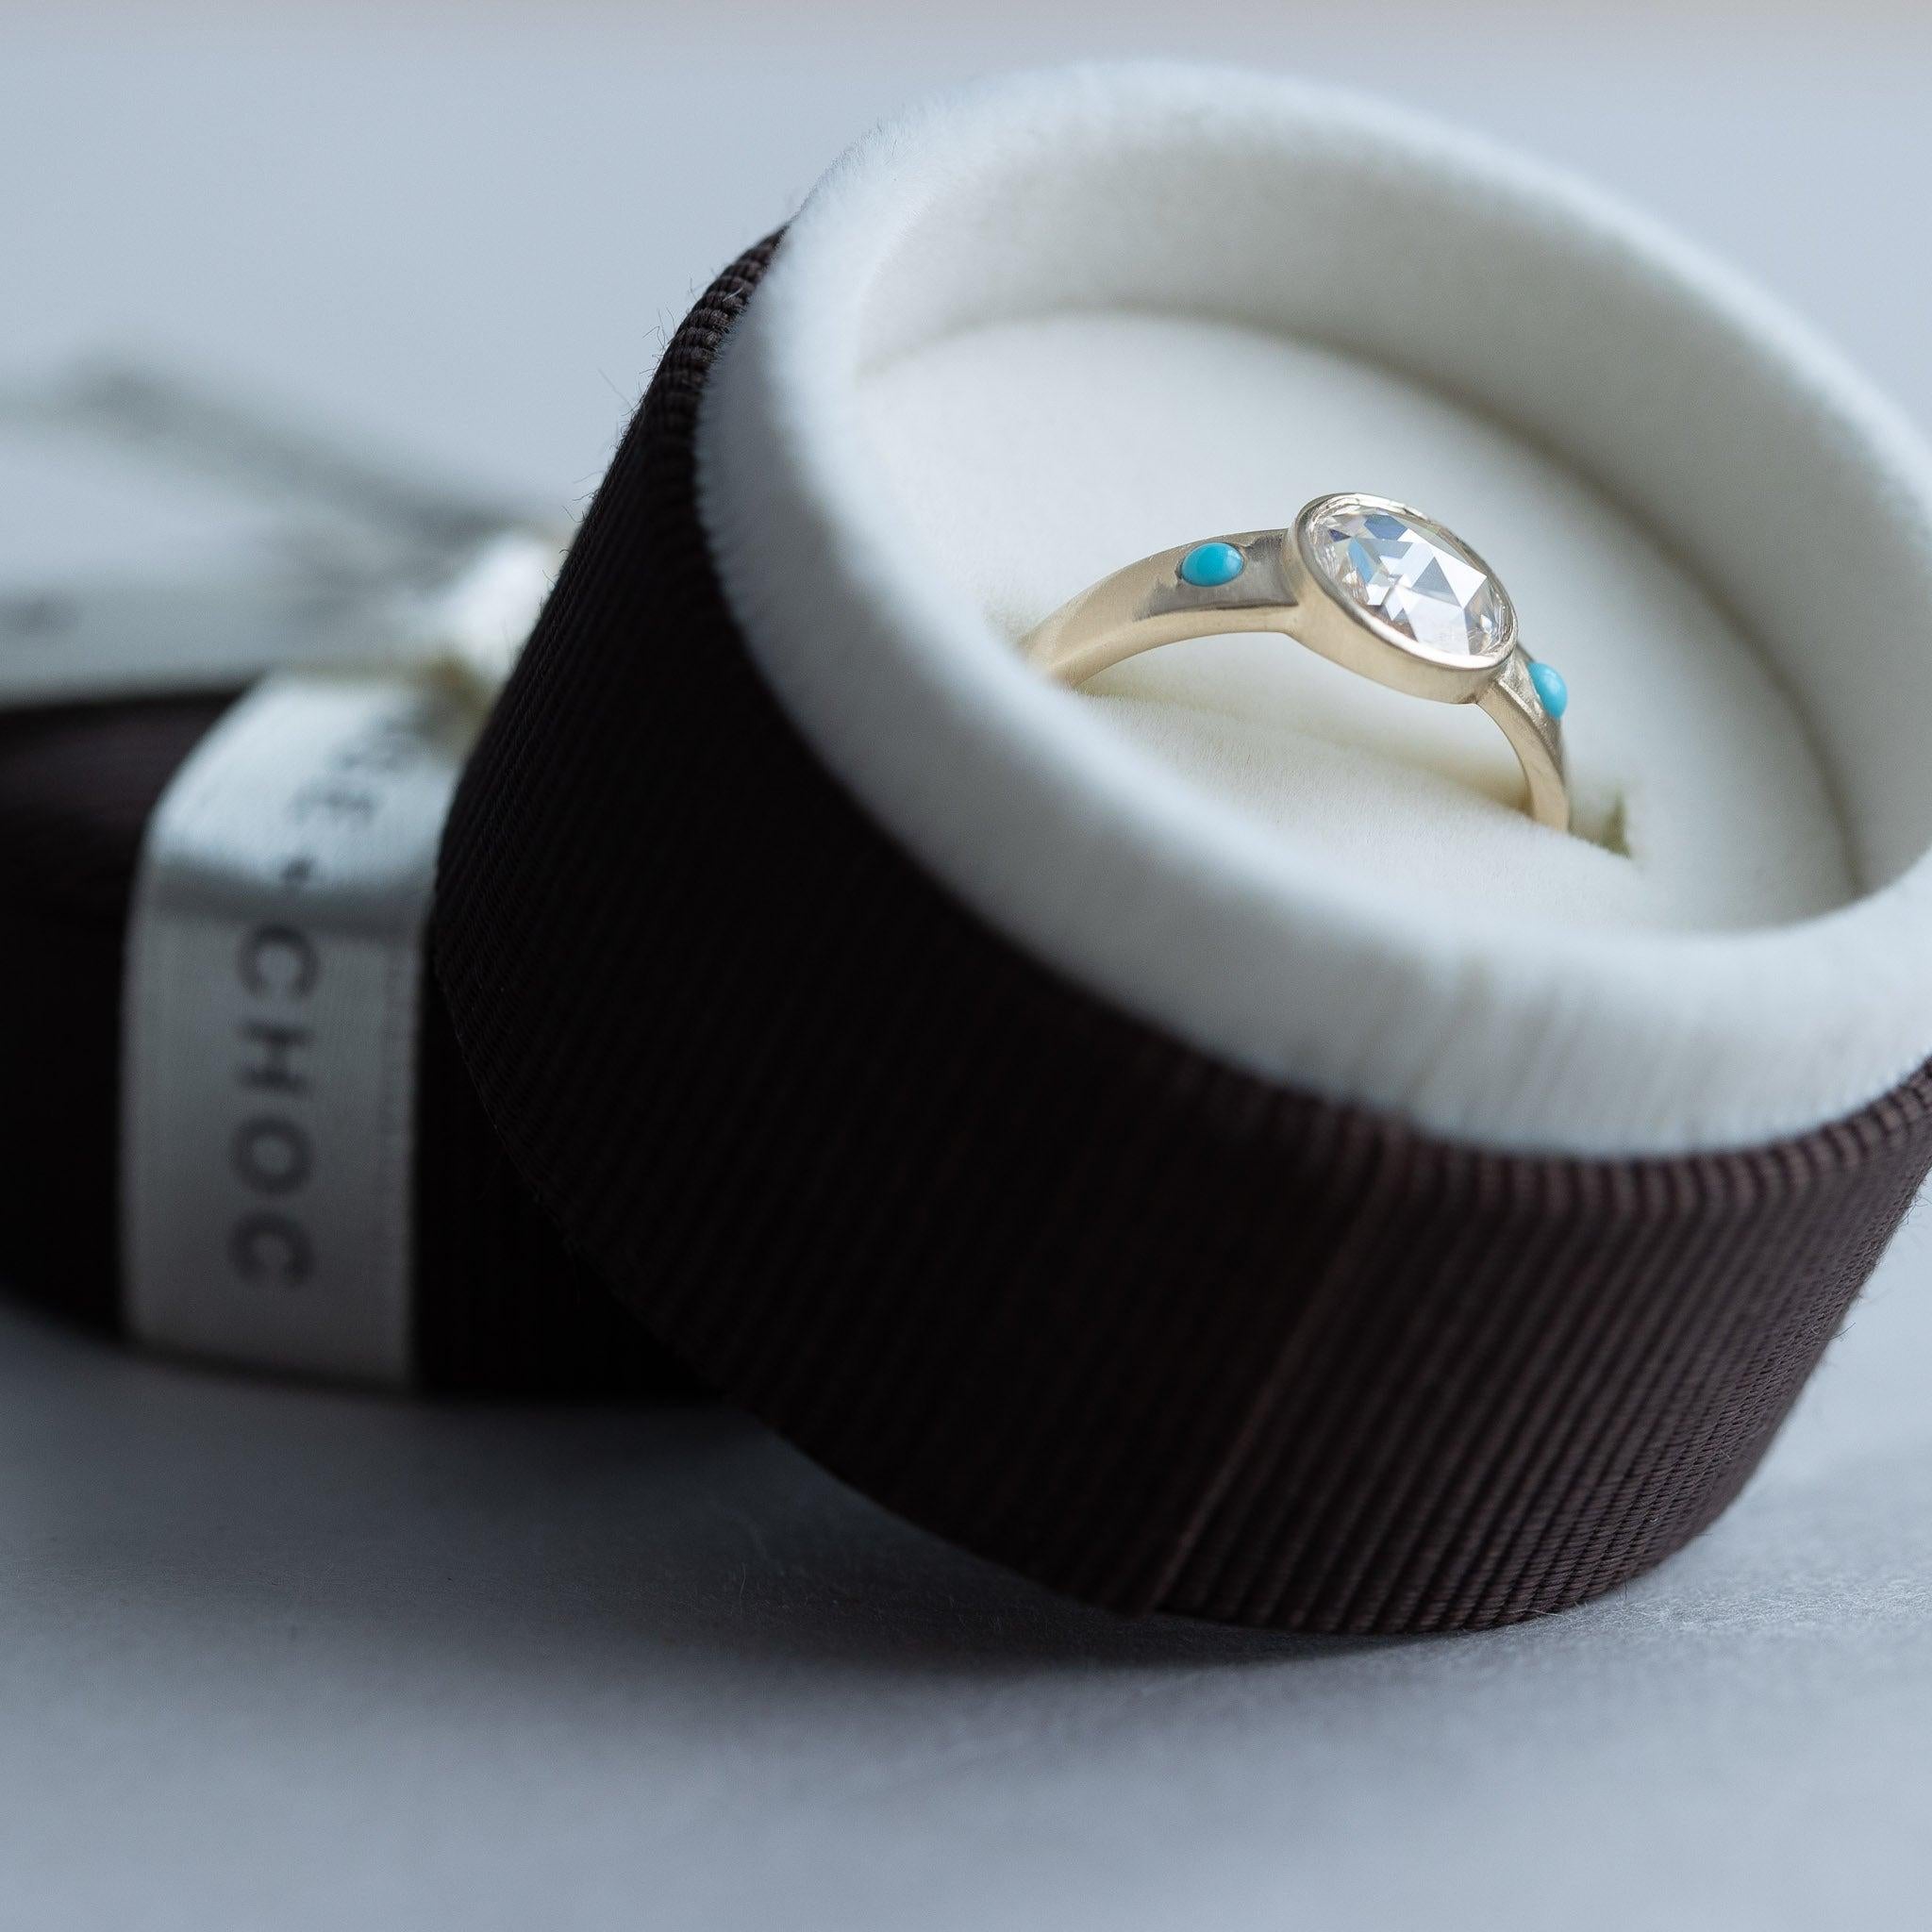 For Sale:  14 Karat Rose Cut Diamond Ring, Turquoise Ring, Yellow Gold Ring, Boho Ring 6